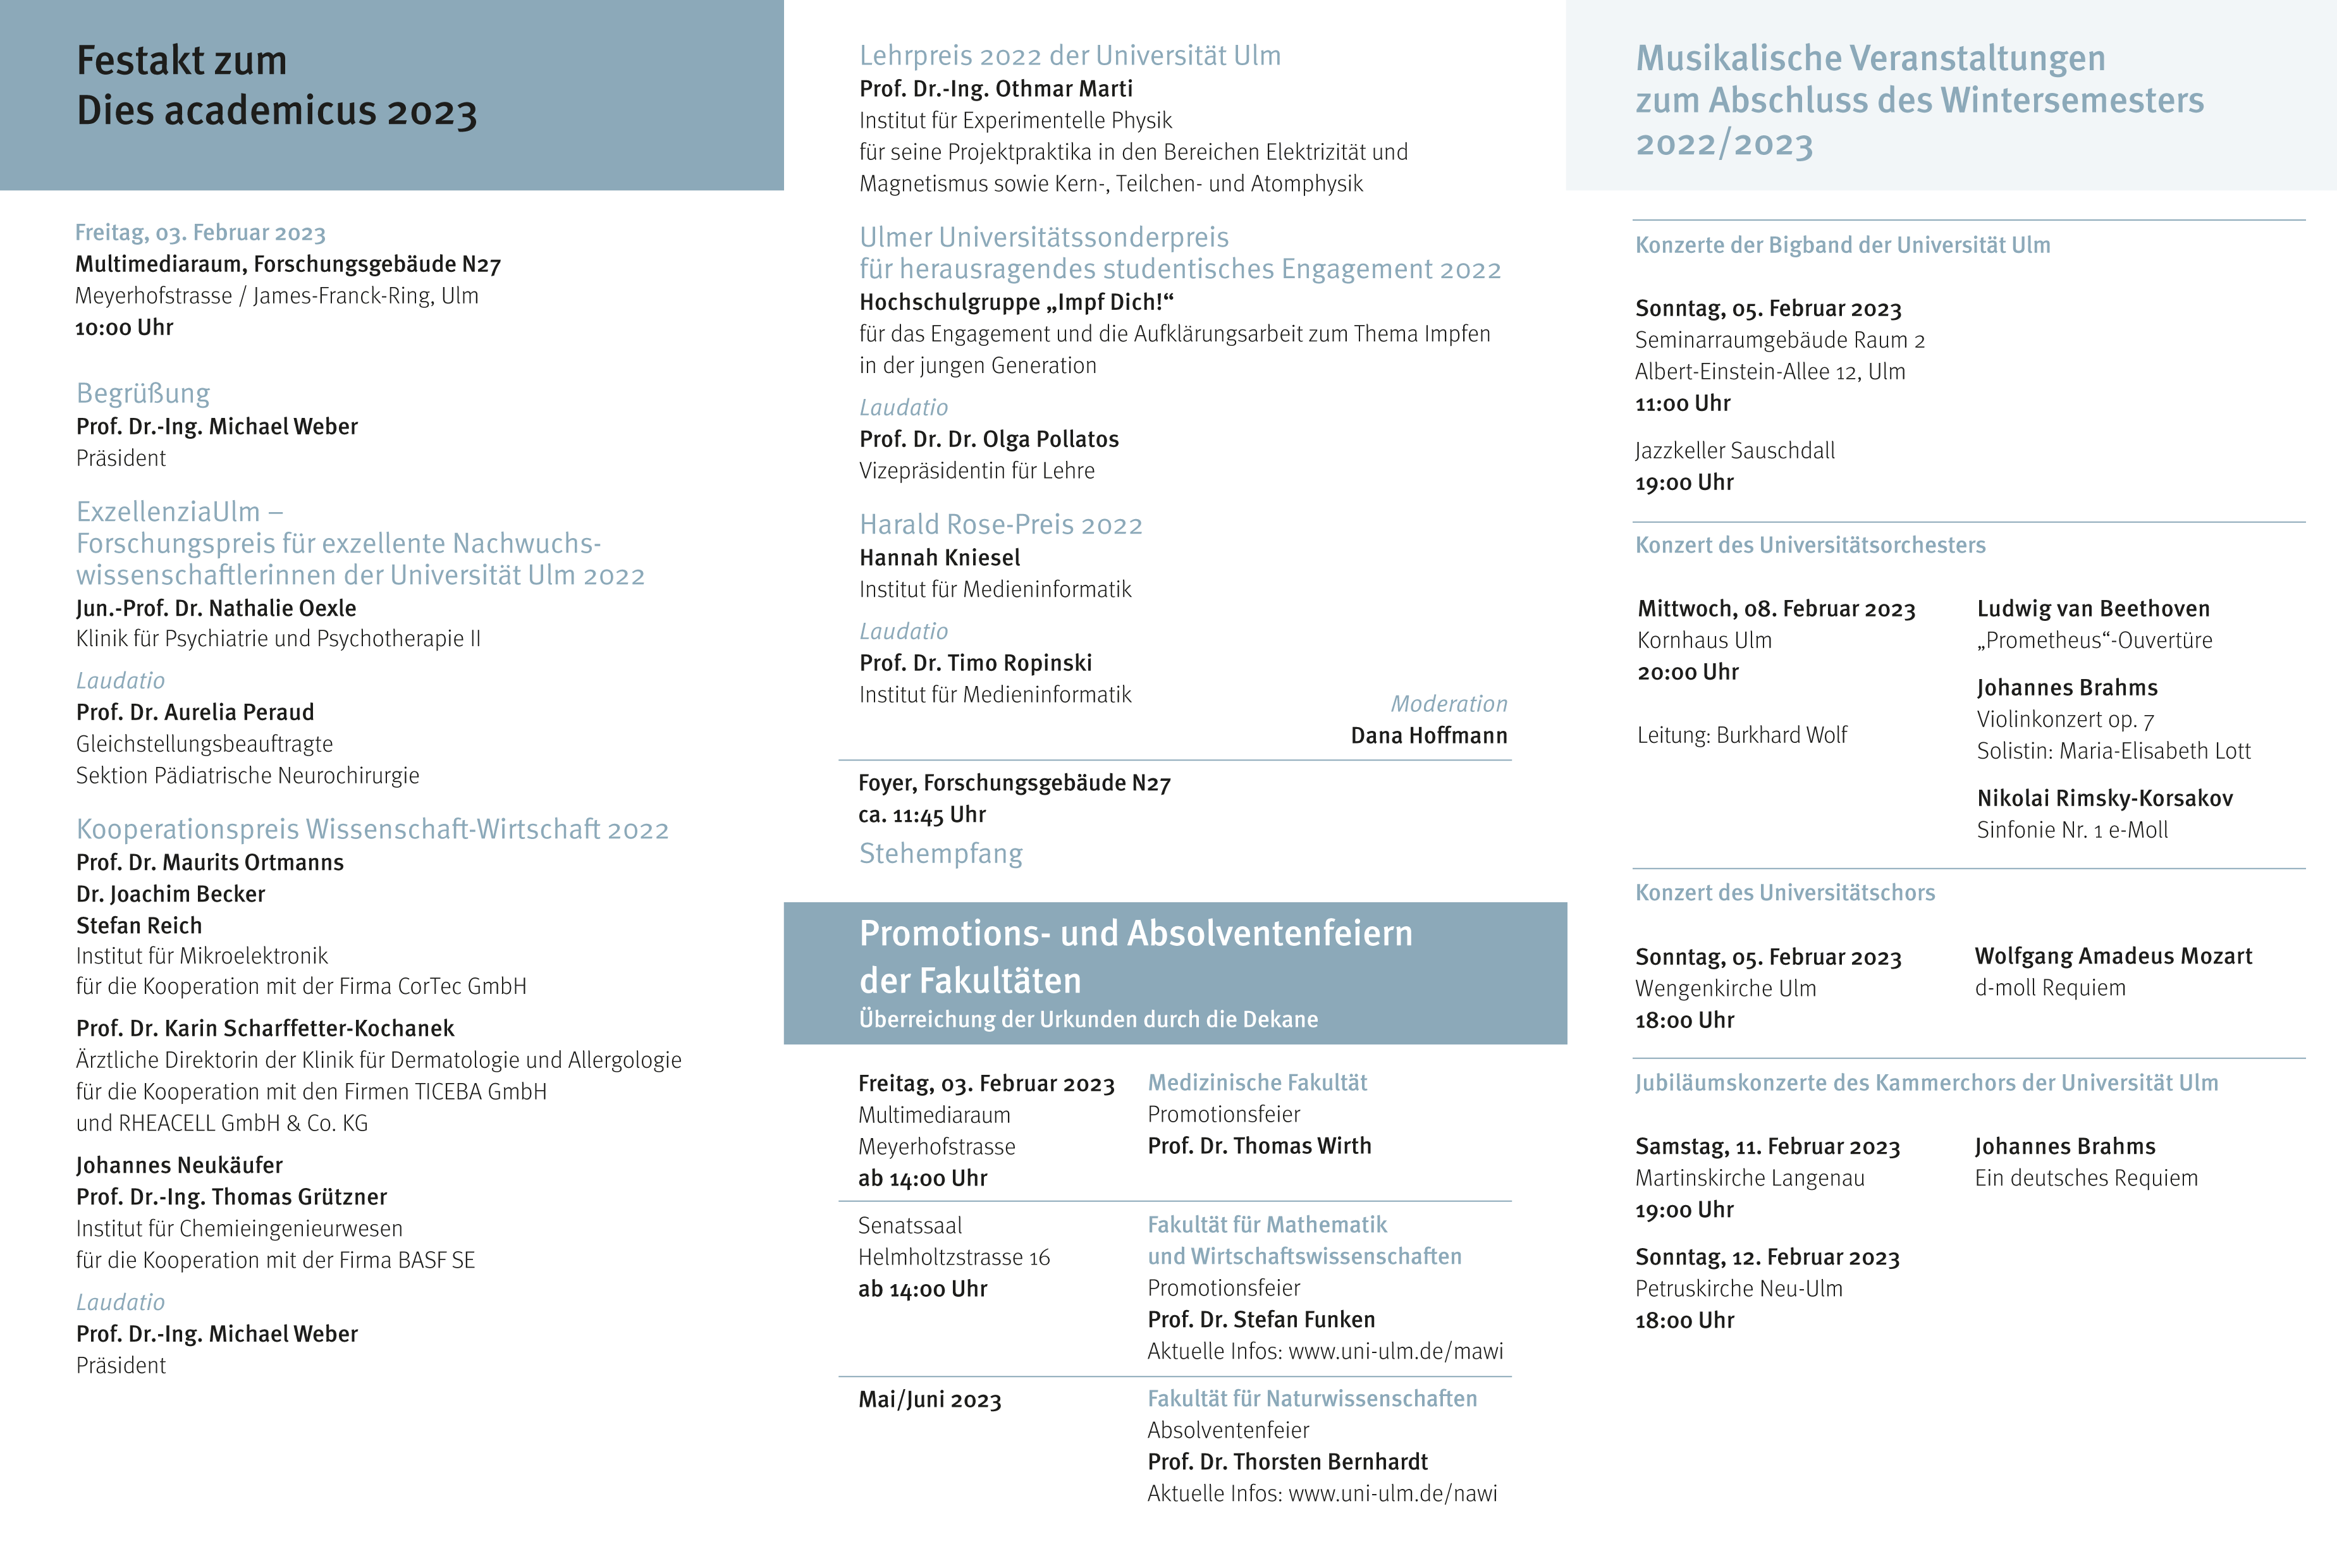 Programm zum Dies academicus der Universität Ulm am 03.02.2023. Bild klicken für PDF Download.